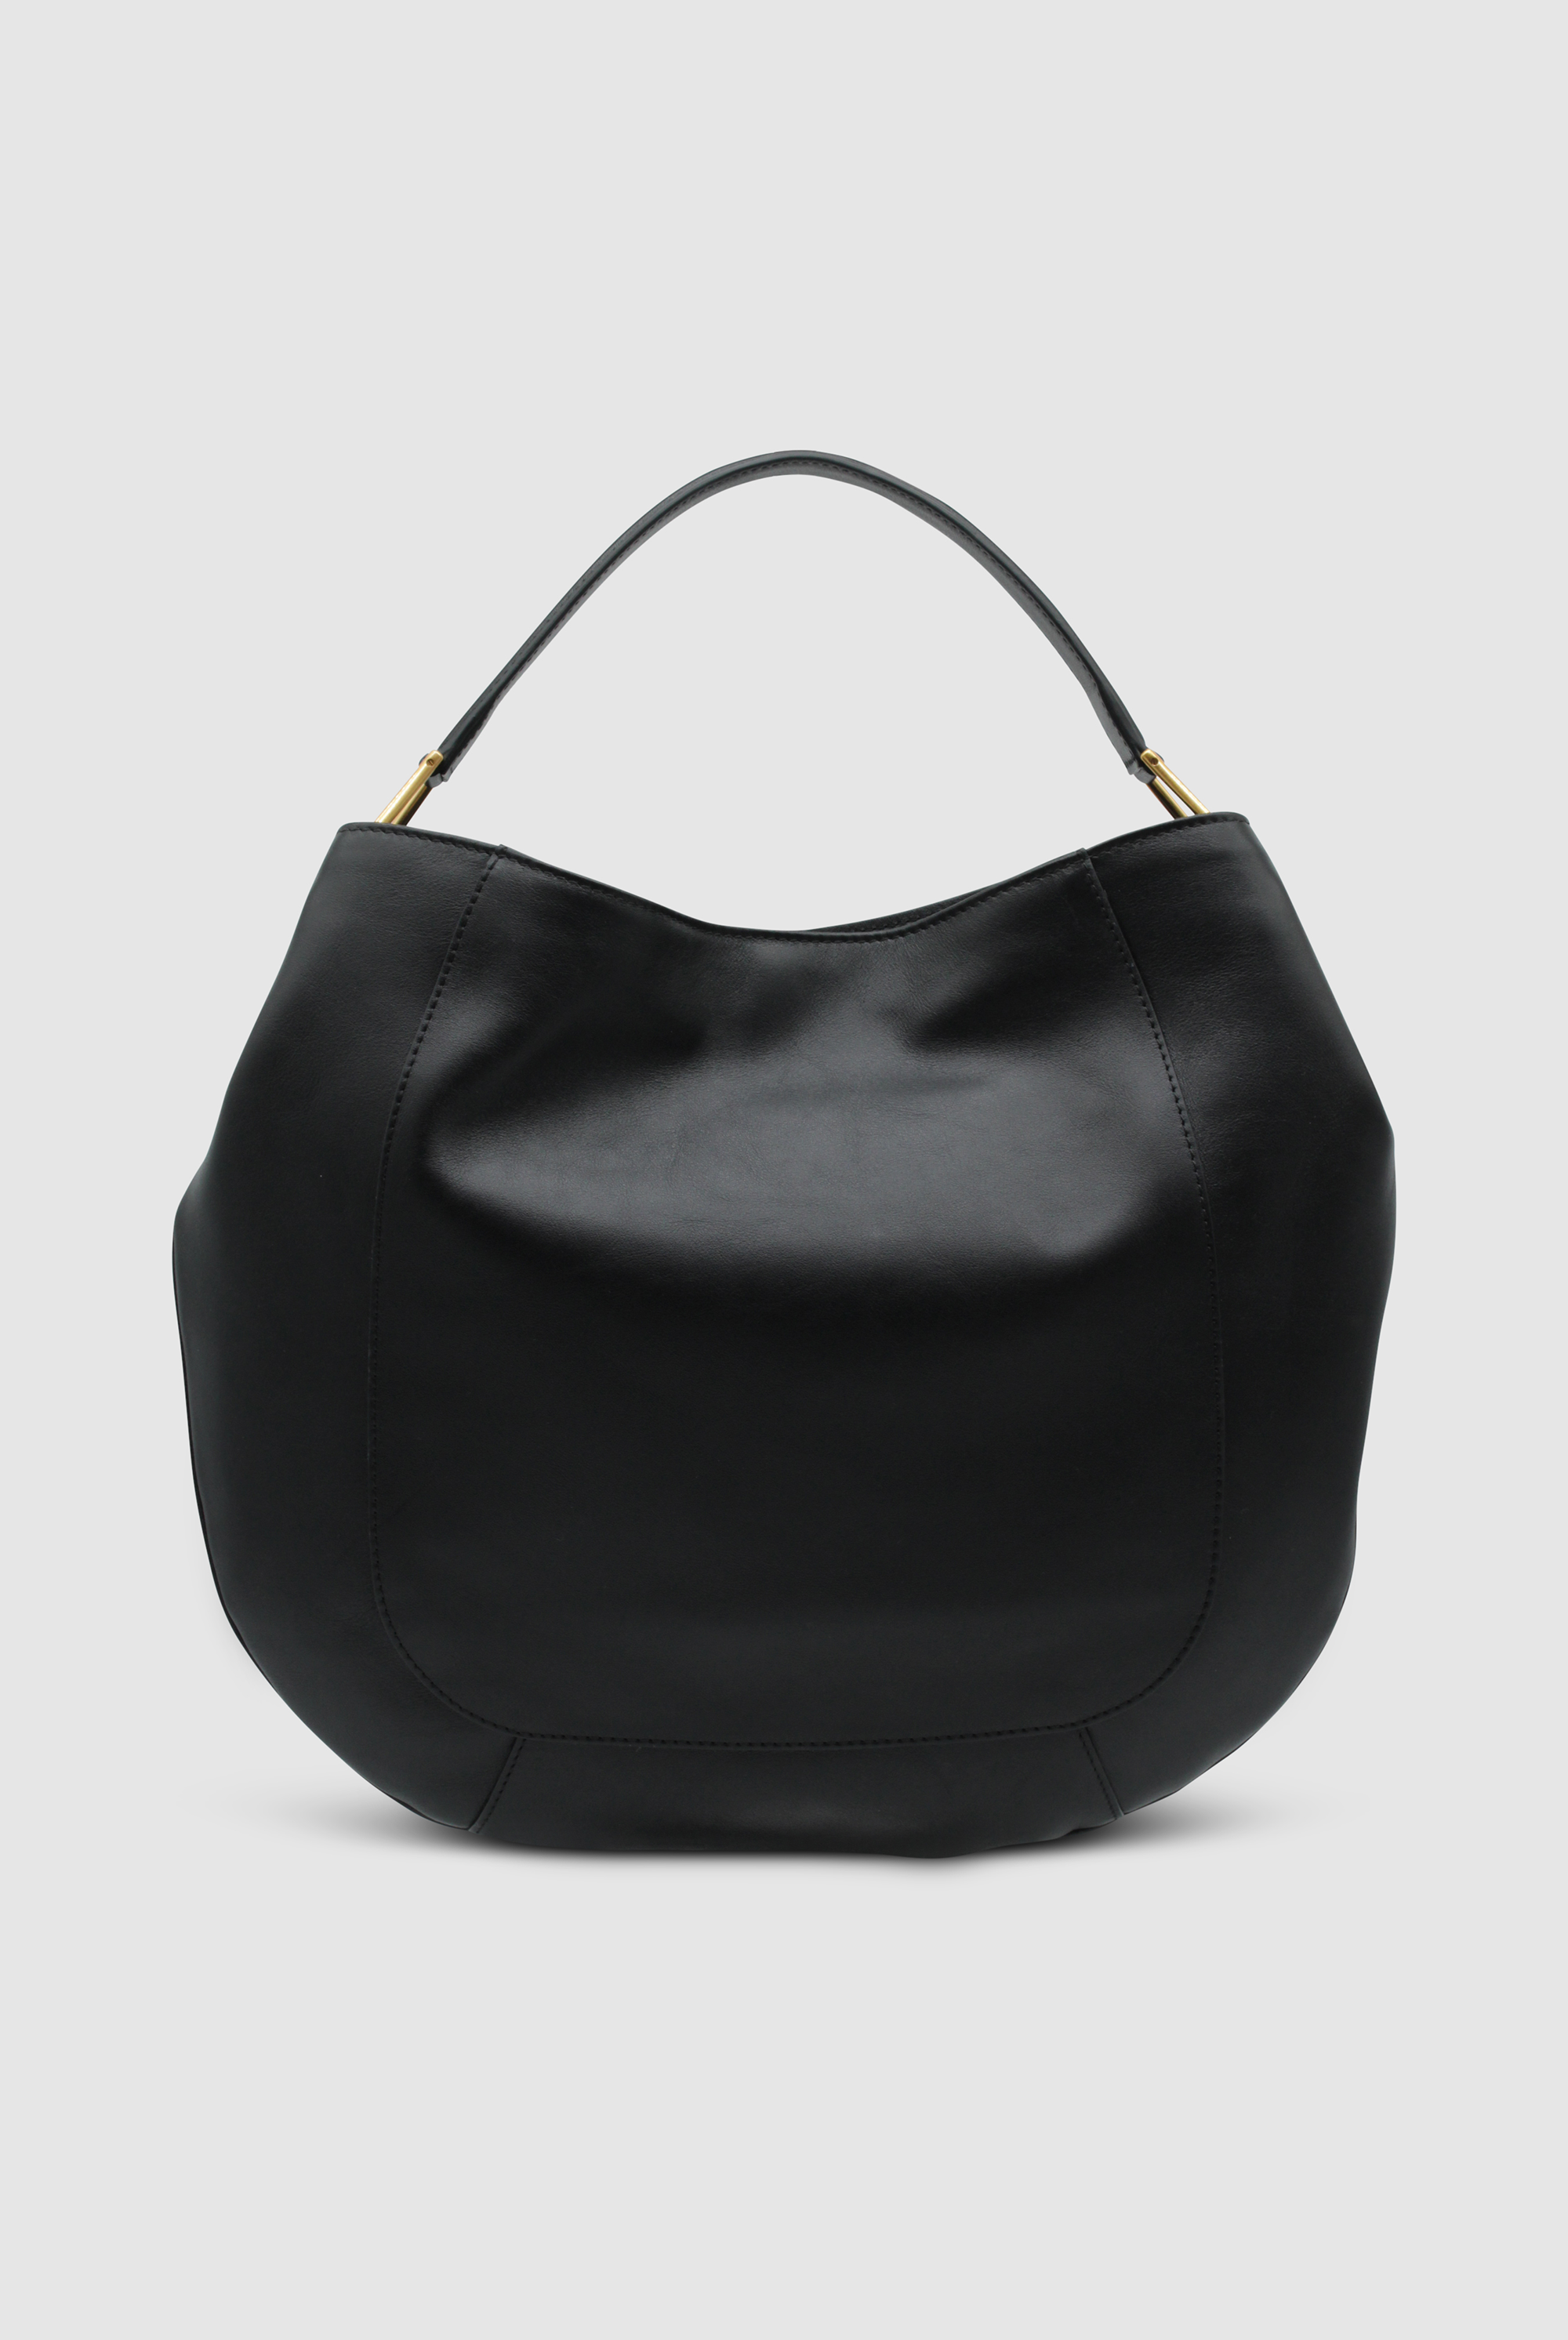 Bild einer sehr großen, runden Handtasche. Sie ist aus schwarzem, glatten Leder gefertigt von der Marke Gianni Chiarini